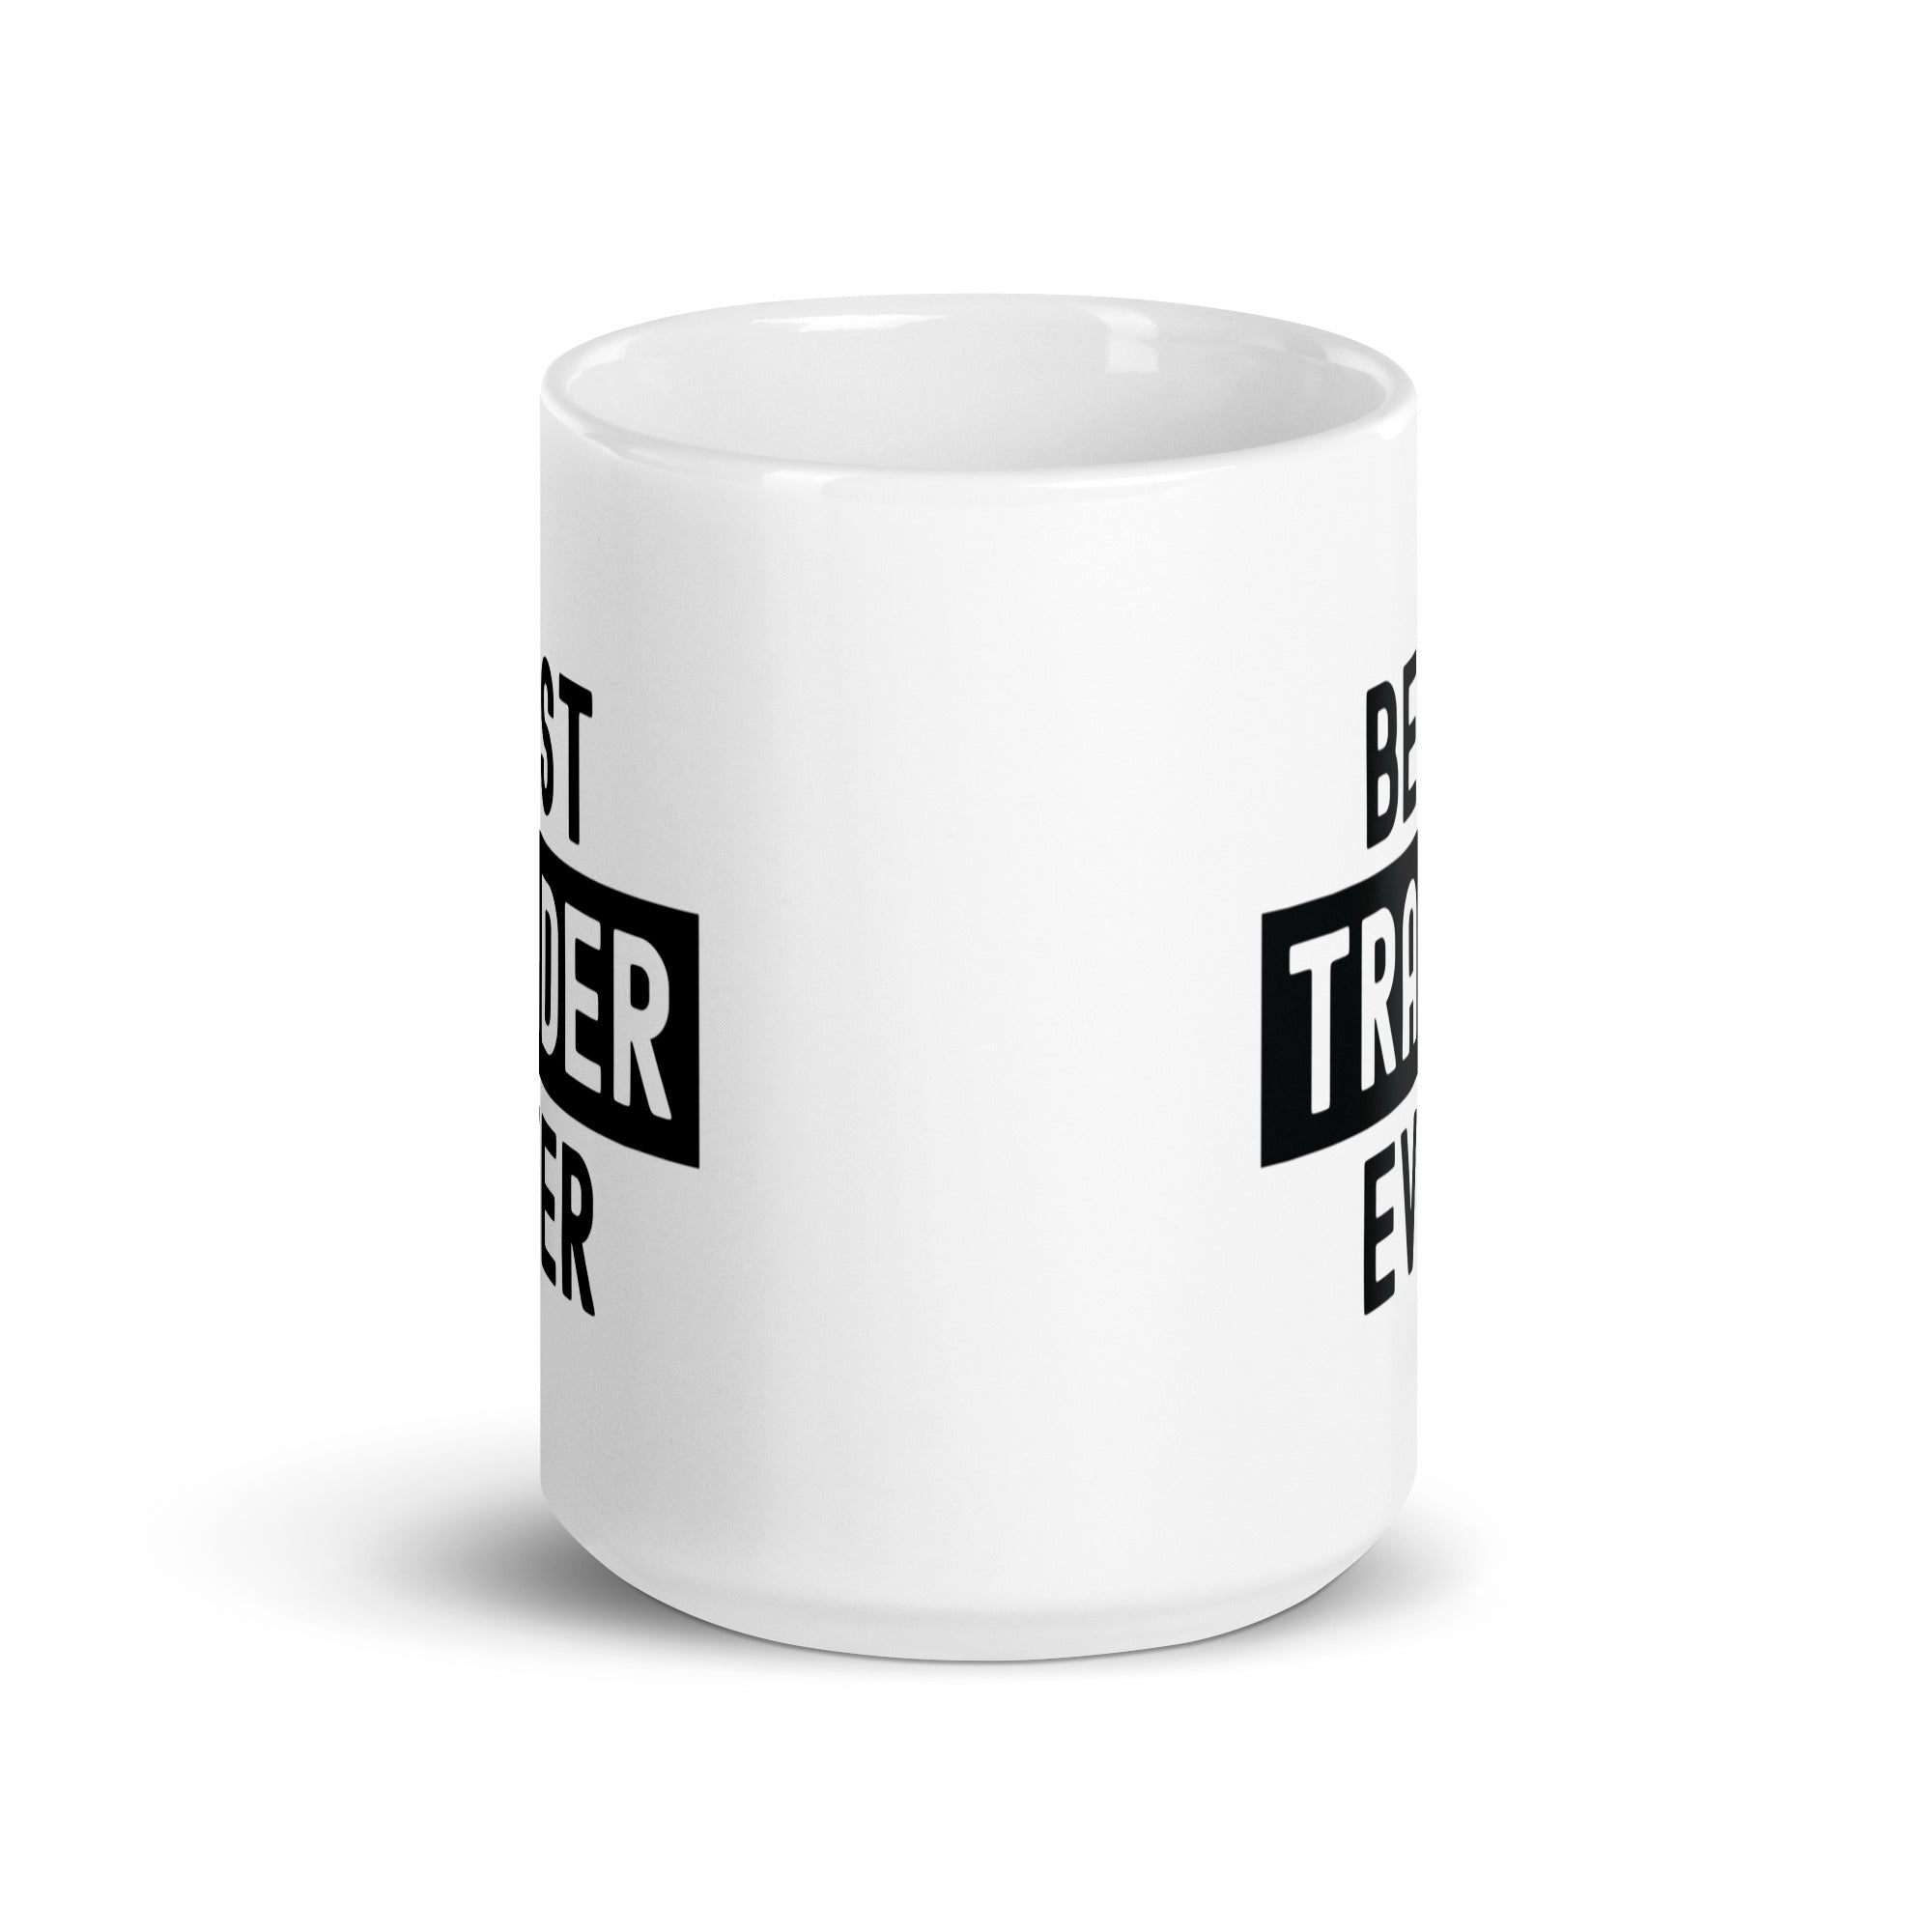 White glossy mug | Best. Trader. Ever.